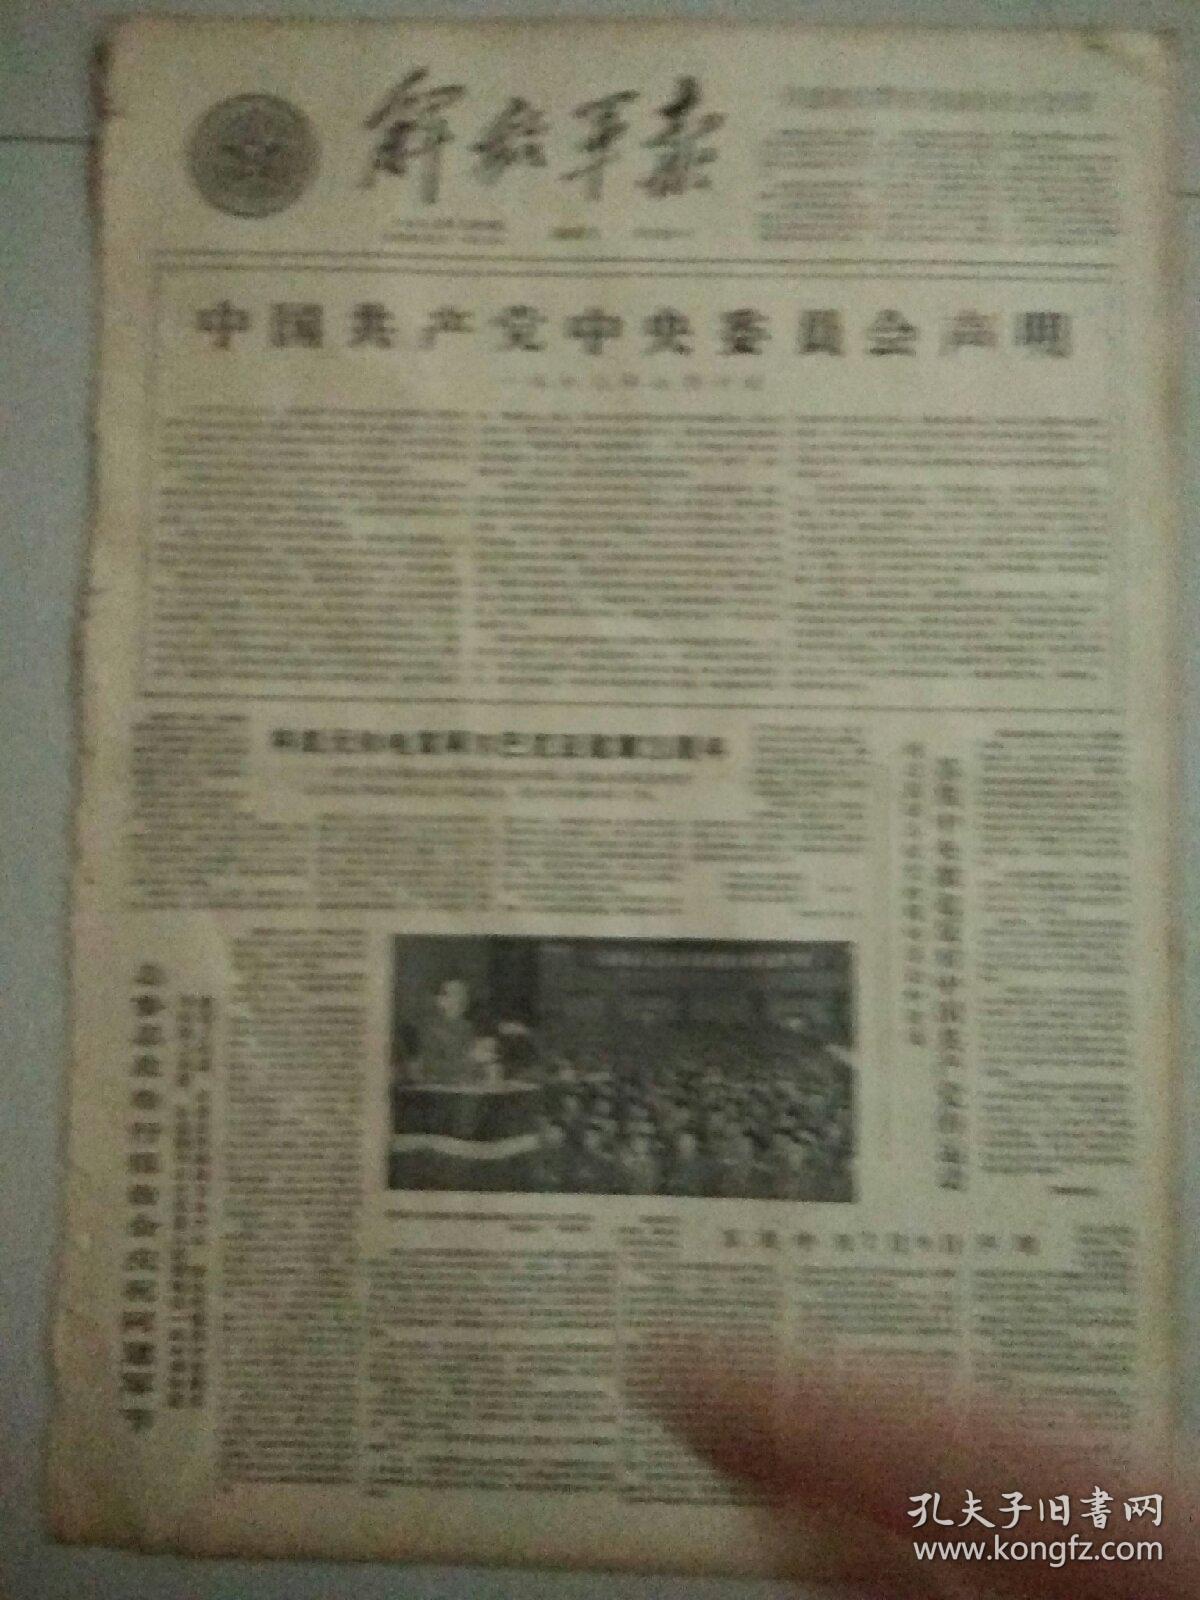 生日报解放军报1963年7月10日（4开四版）
中国共产党中央委员会声明；
英雄的阿尔巴尼亚人民军万岁；